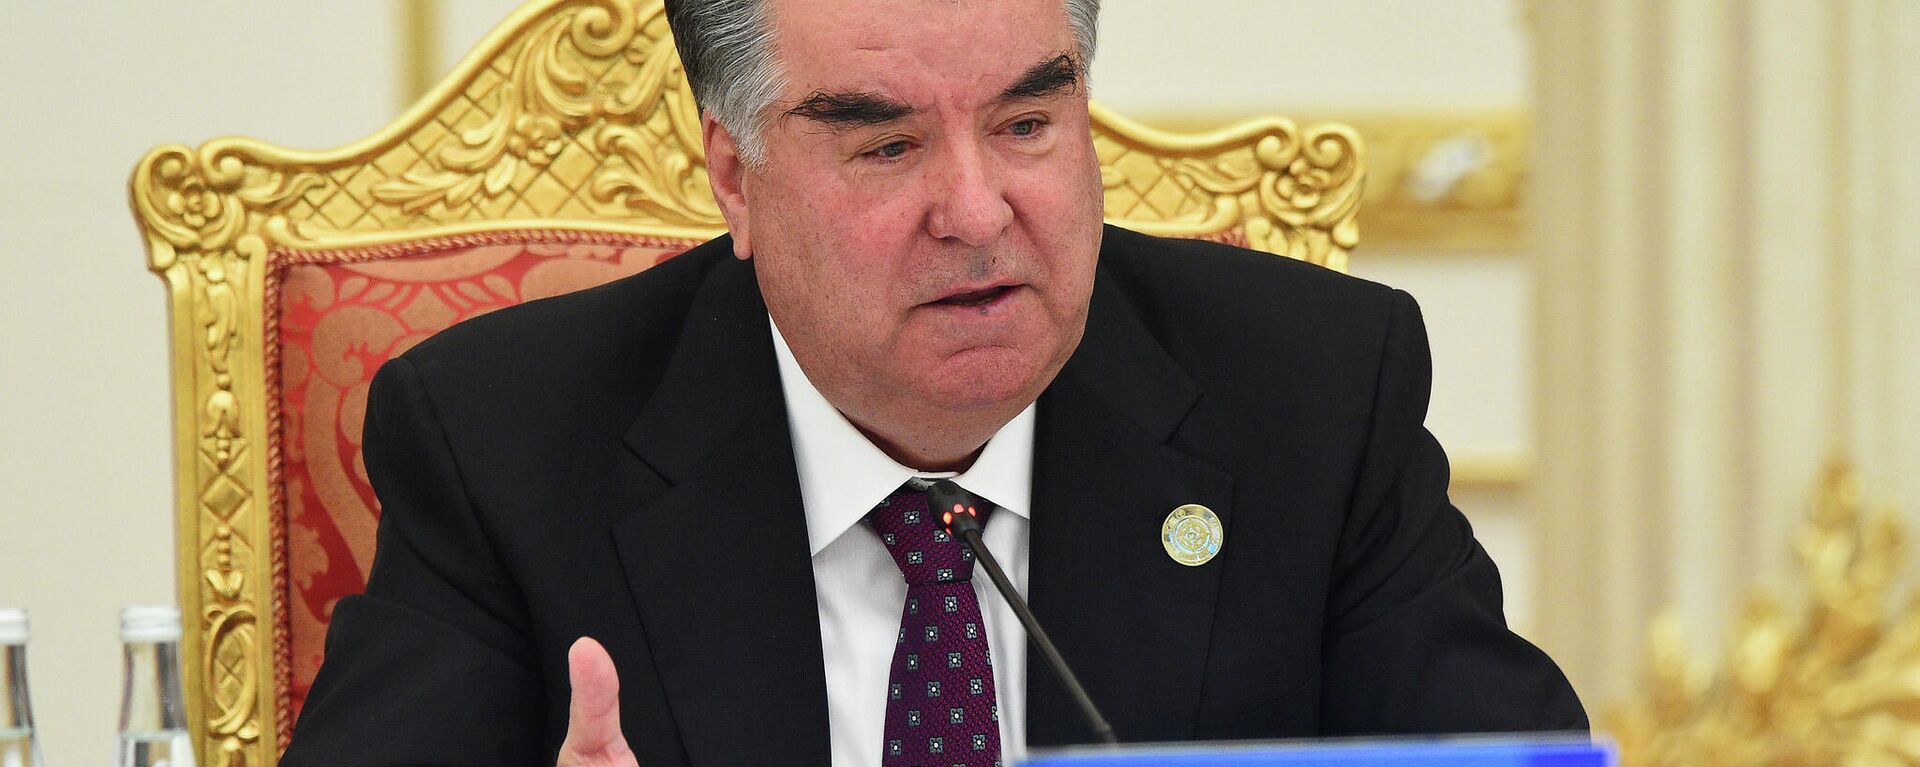 Президент Таджикистана Эмомали Рахмон - Sputnik Таджикистан, 1920, 17.09.2021